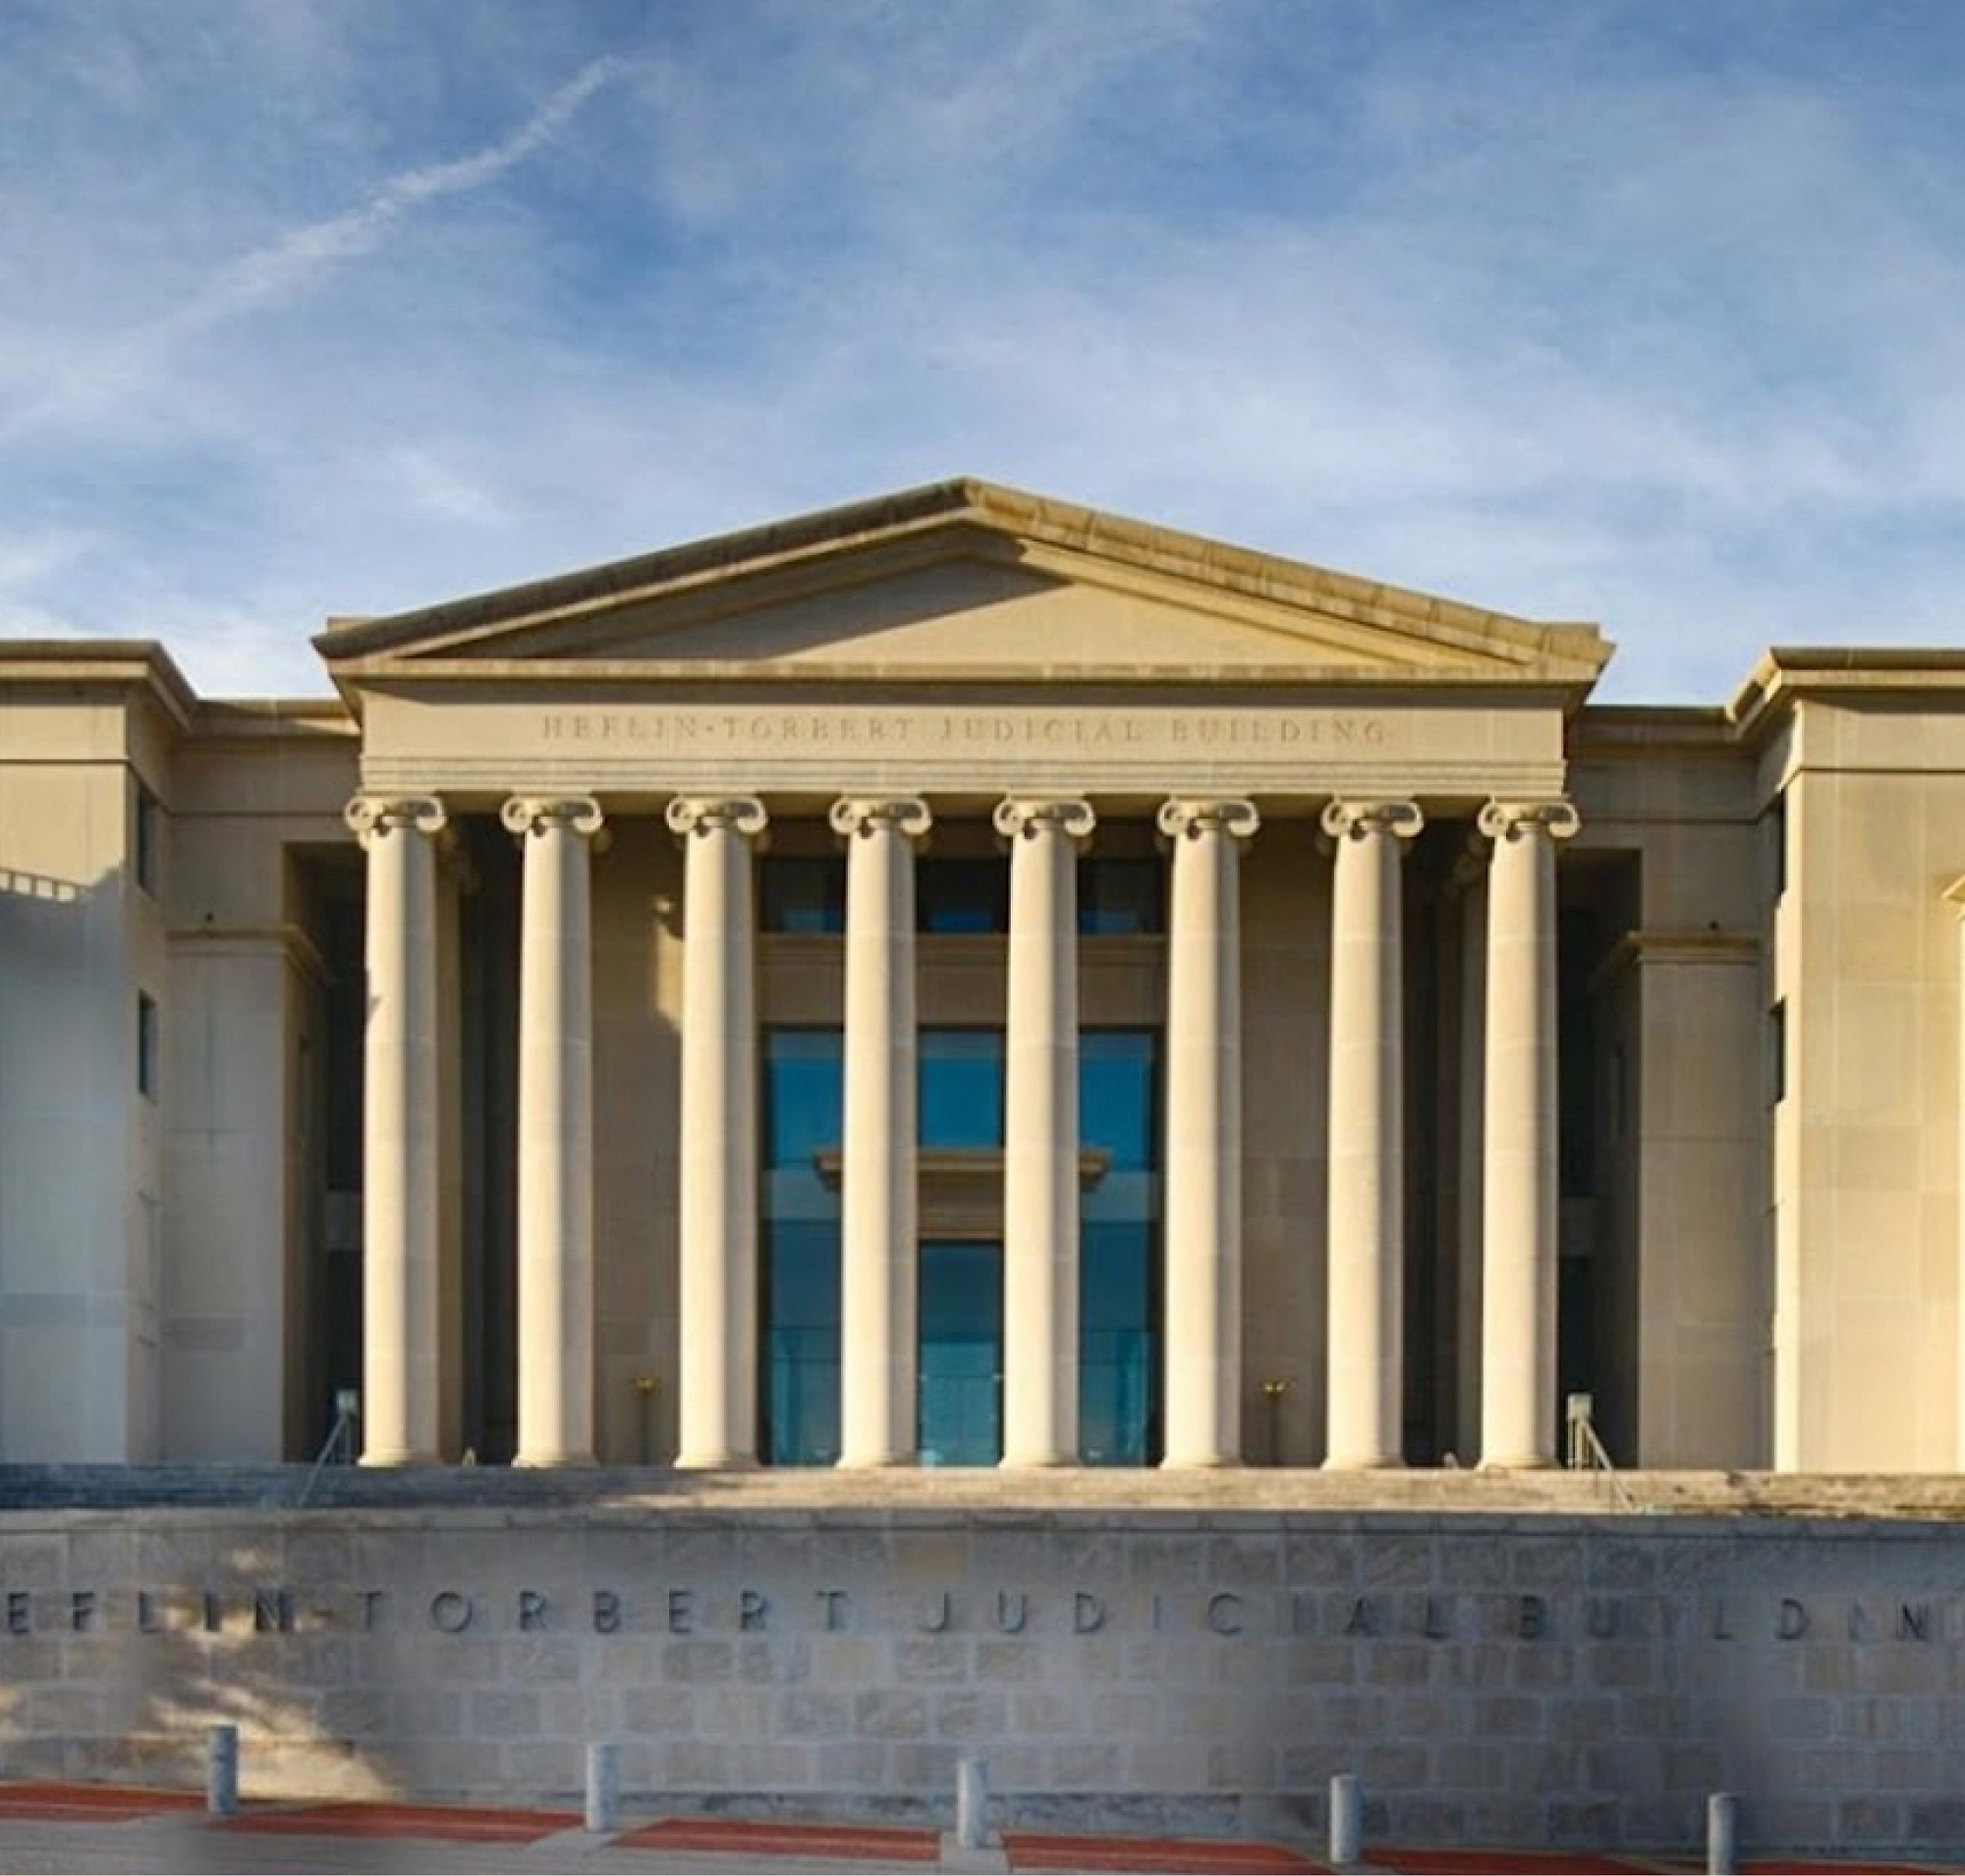 Vue frontale de l’édifice judiciaire Heflin-Tortert comportant une façade classique avec des colonnes sous un ciel dégagé.